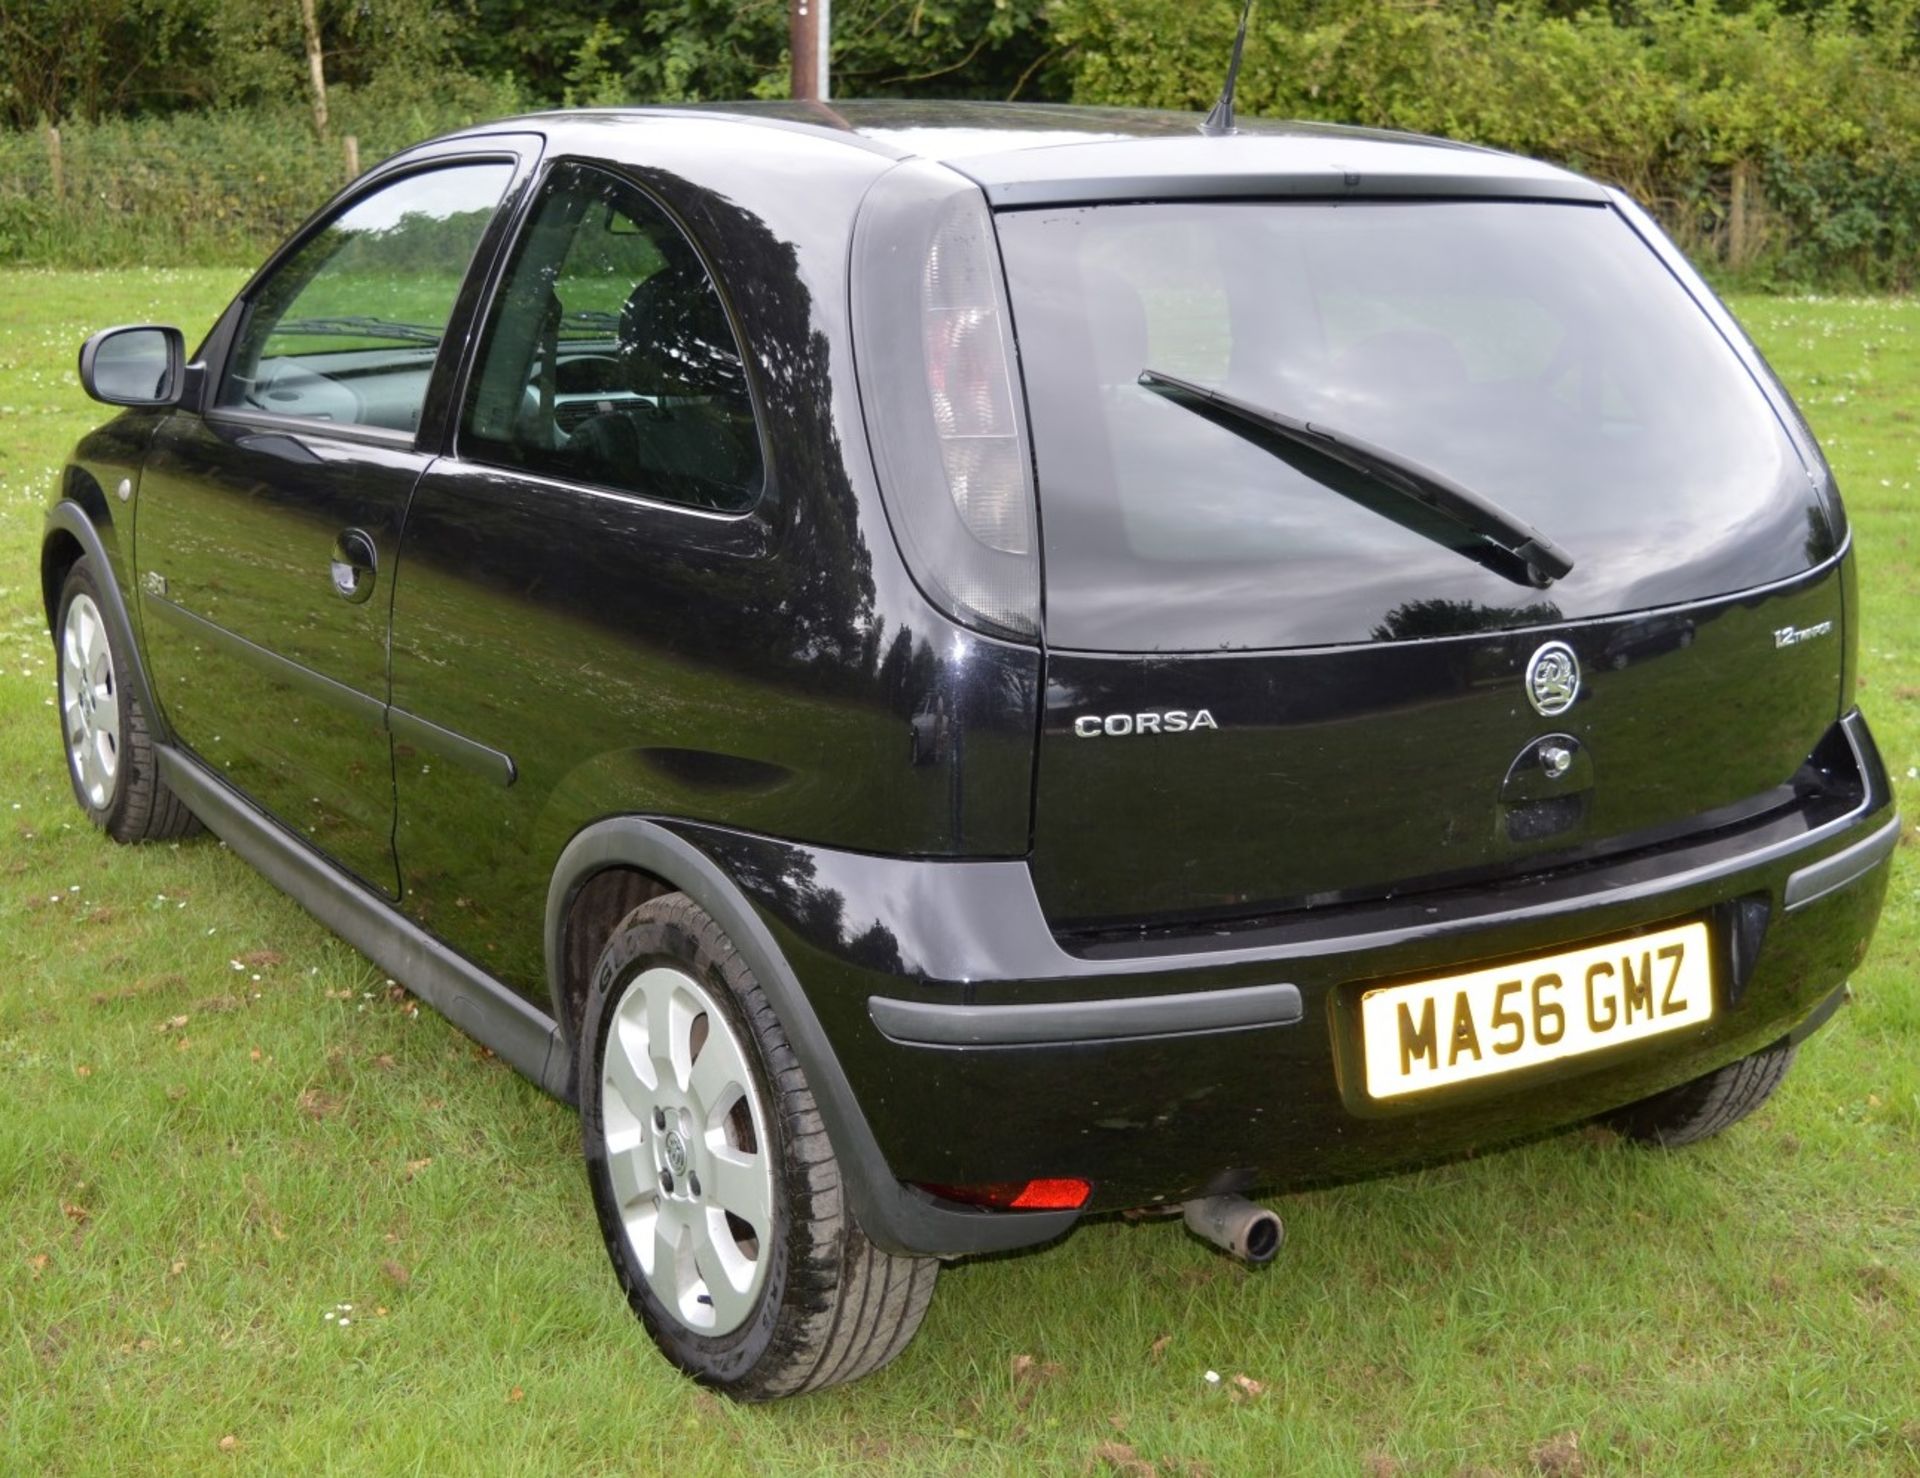 1 x Vauxhall Corsa SXI+ 3 Door Hatchback 1.2 - 2006 56 Plate - 78,000 Miles - MOT June 2018 - Image 5 of 36